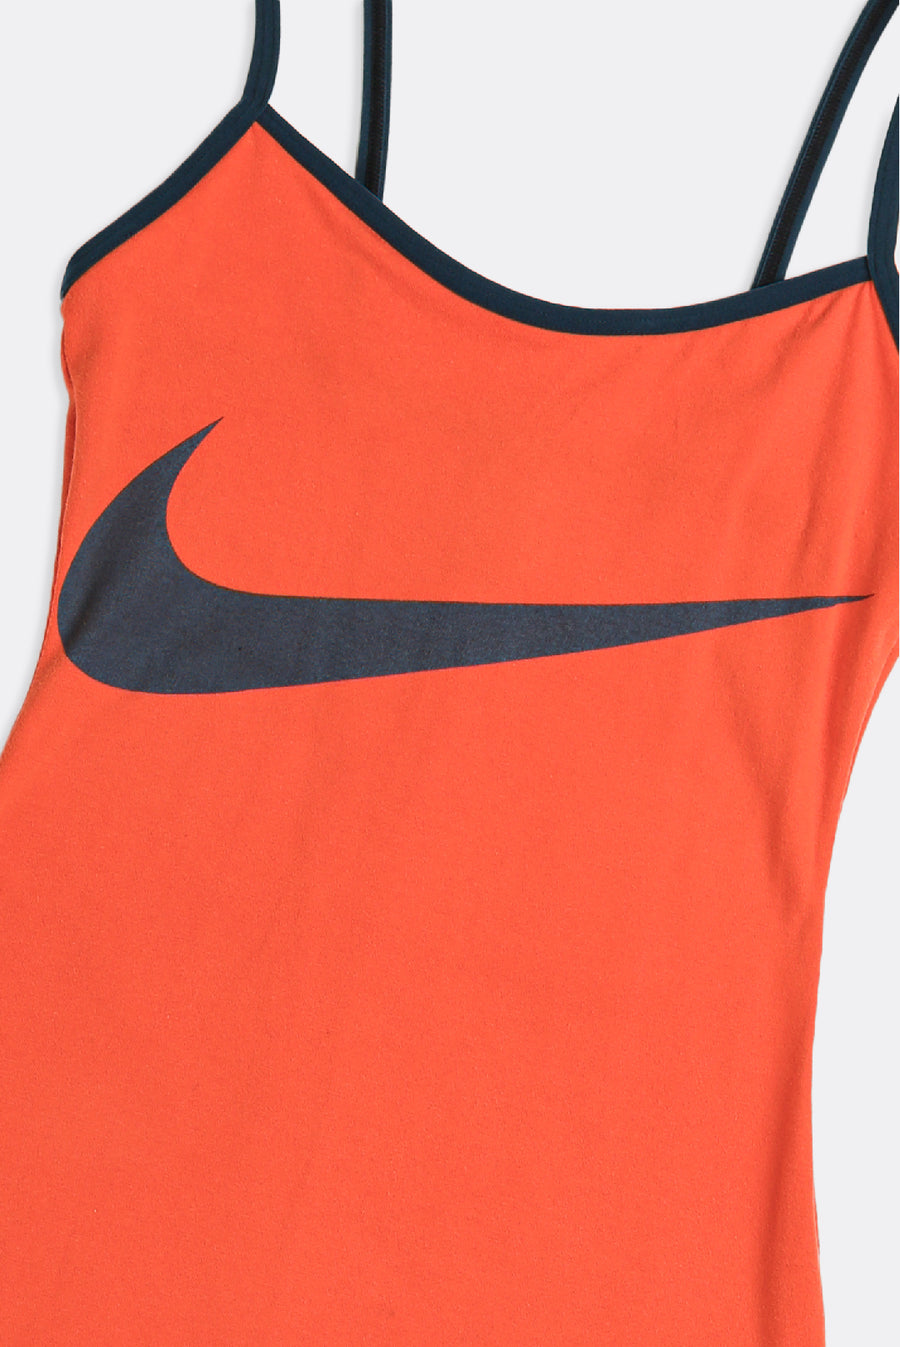 Rework Nike Strappy Dress - XXS